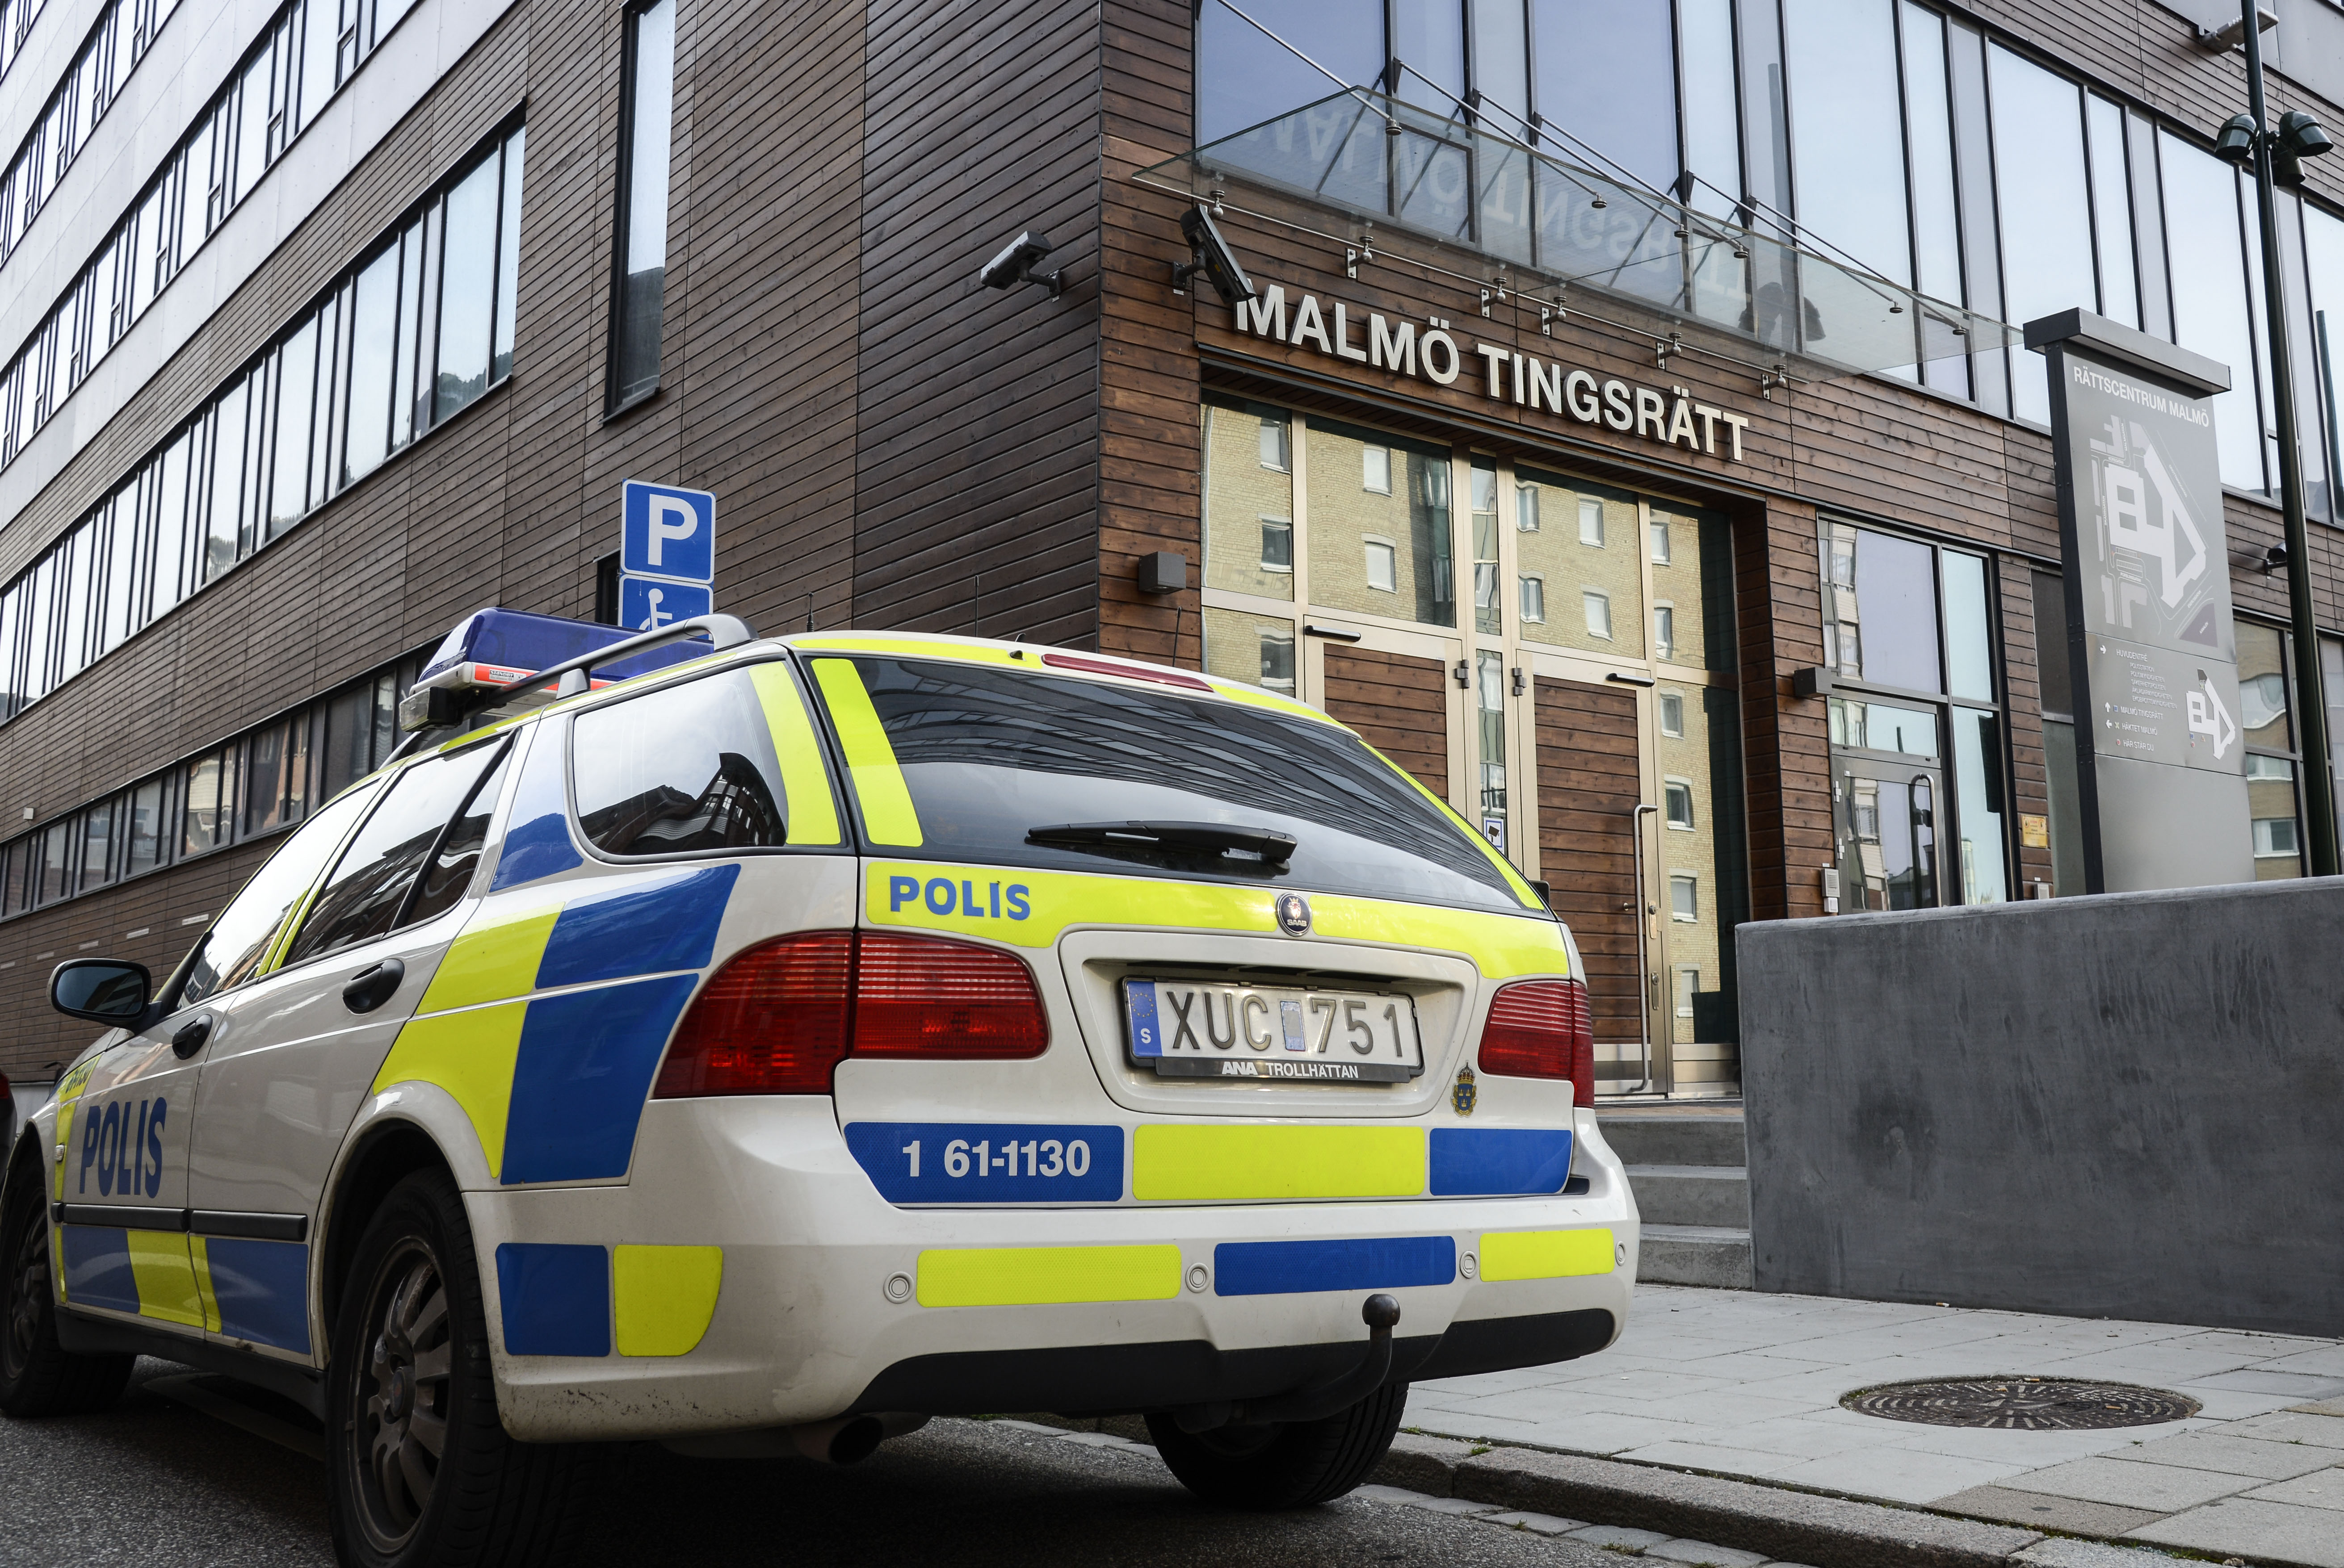 Våld mot tjänsteman, Hot mot tjänsteman, Personal, Malmö tingsrätt